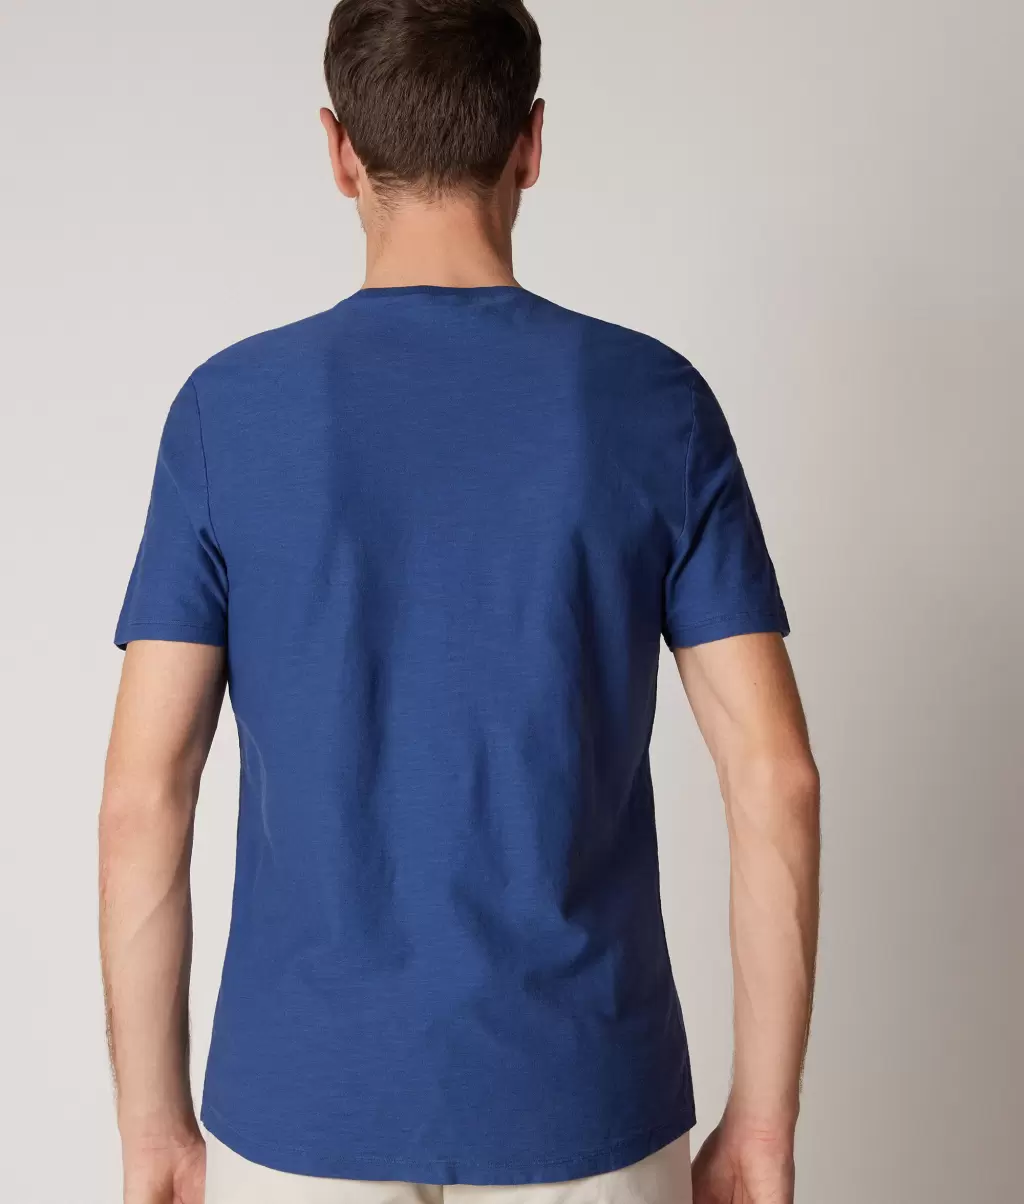 Koszulka Z Bawełny Twist Blue Falconeri T-Shirty I Koszulki Polo Mężczyzna - 2